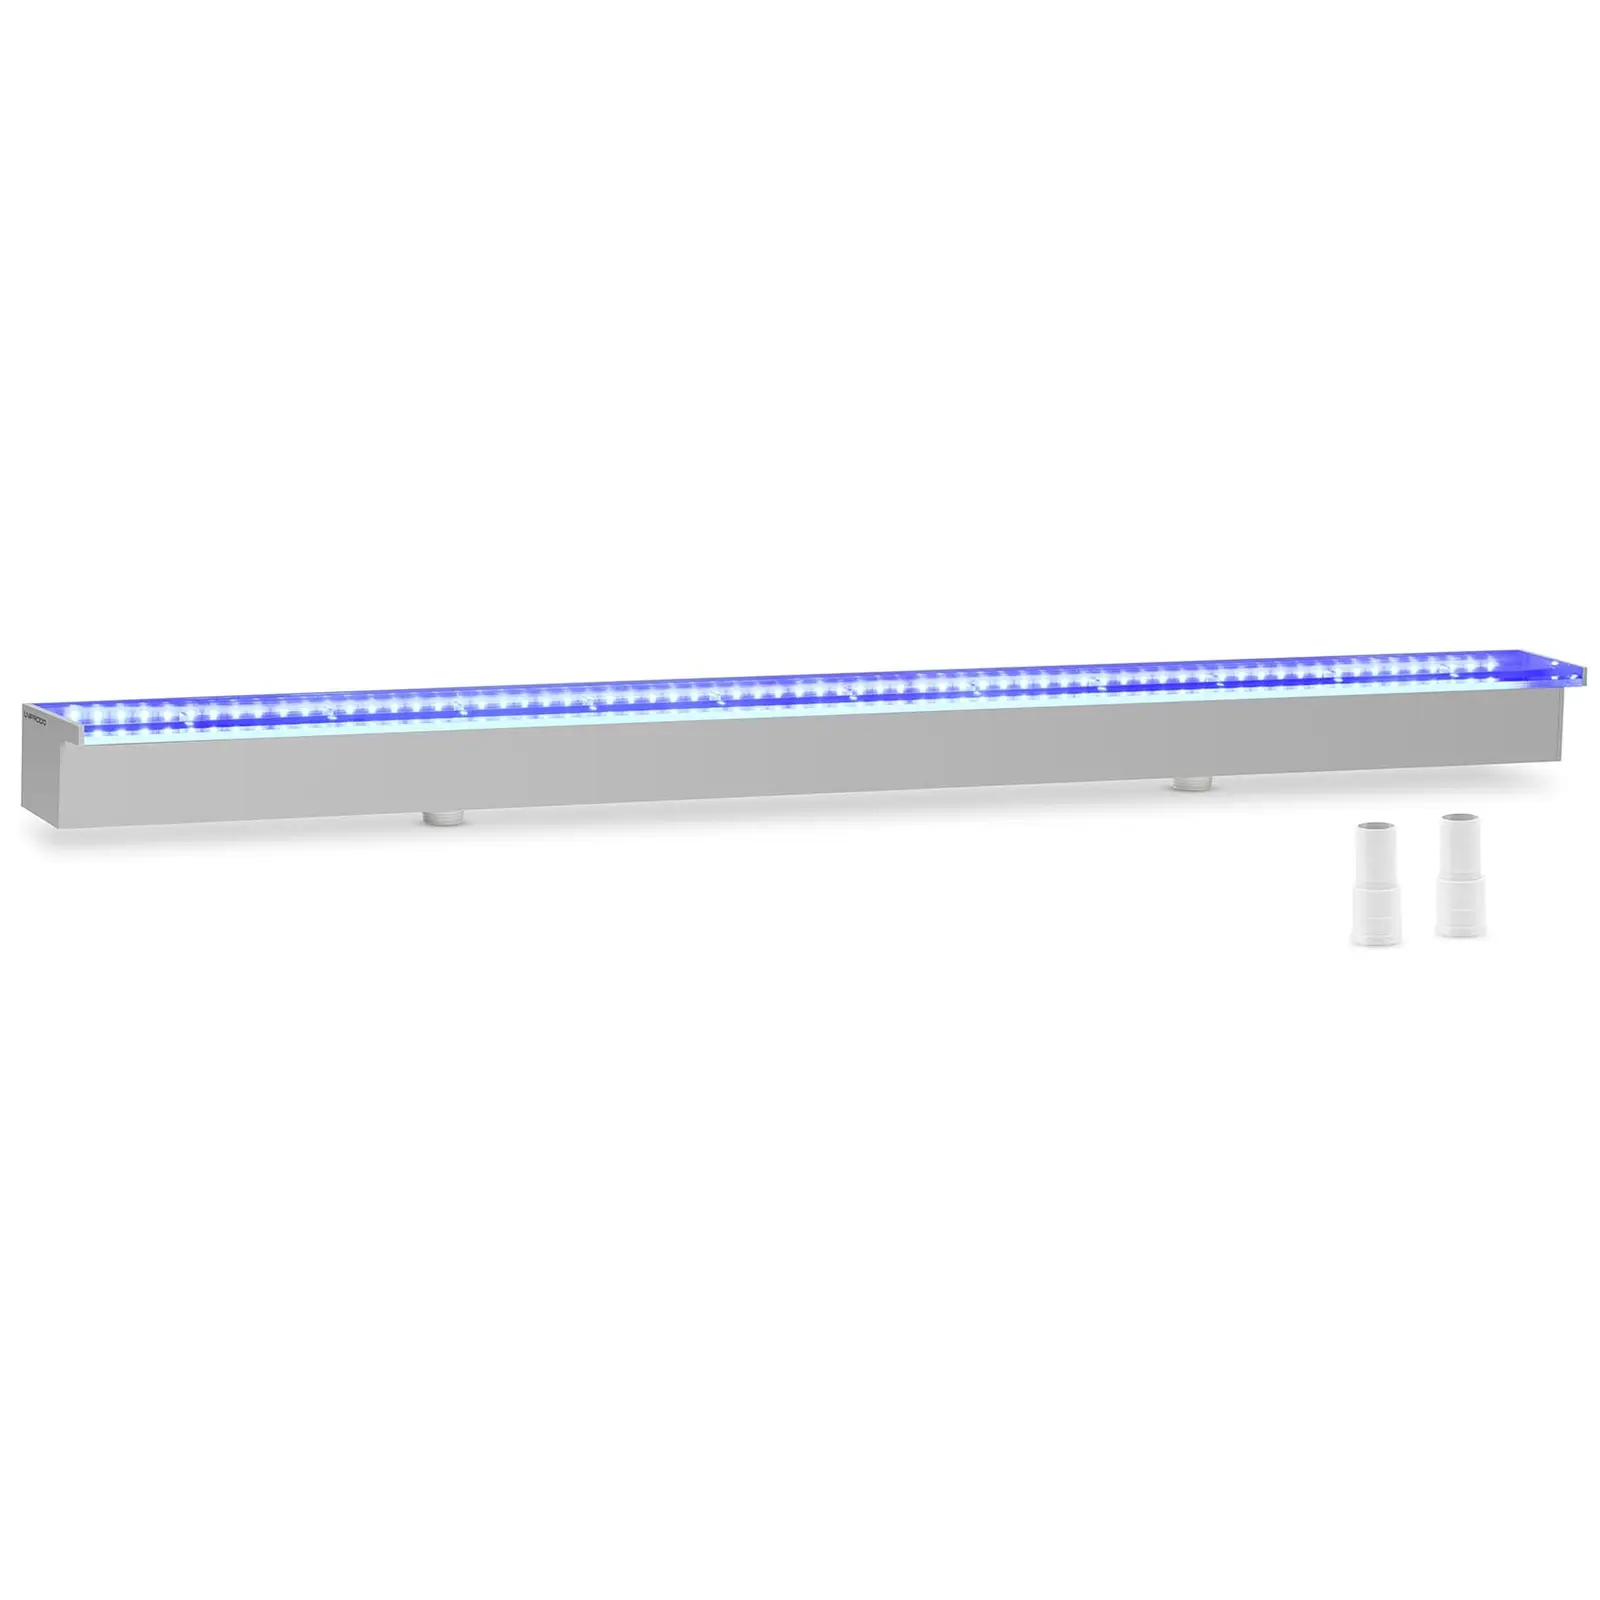 Medence szökőkút - 120 cm - LED világítás - kék / fehér